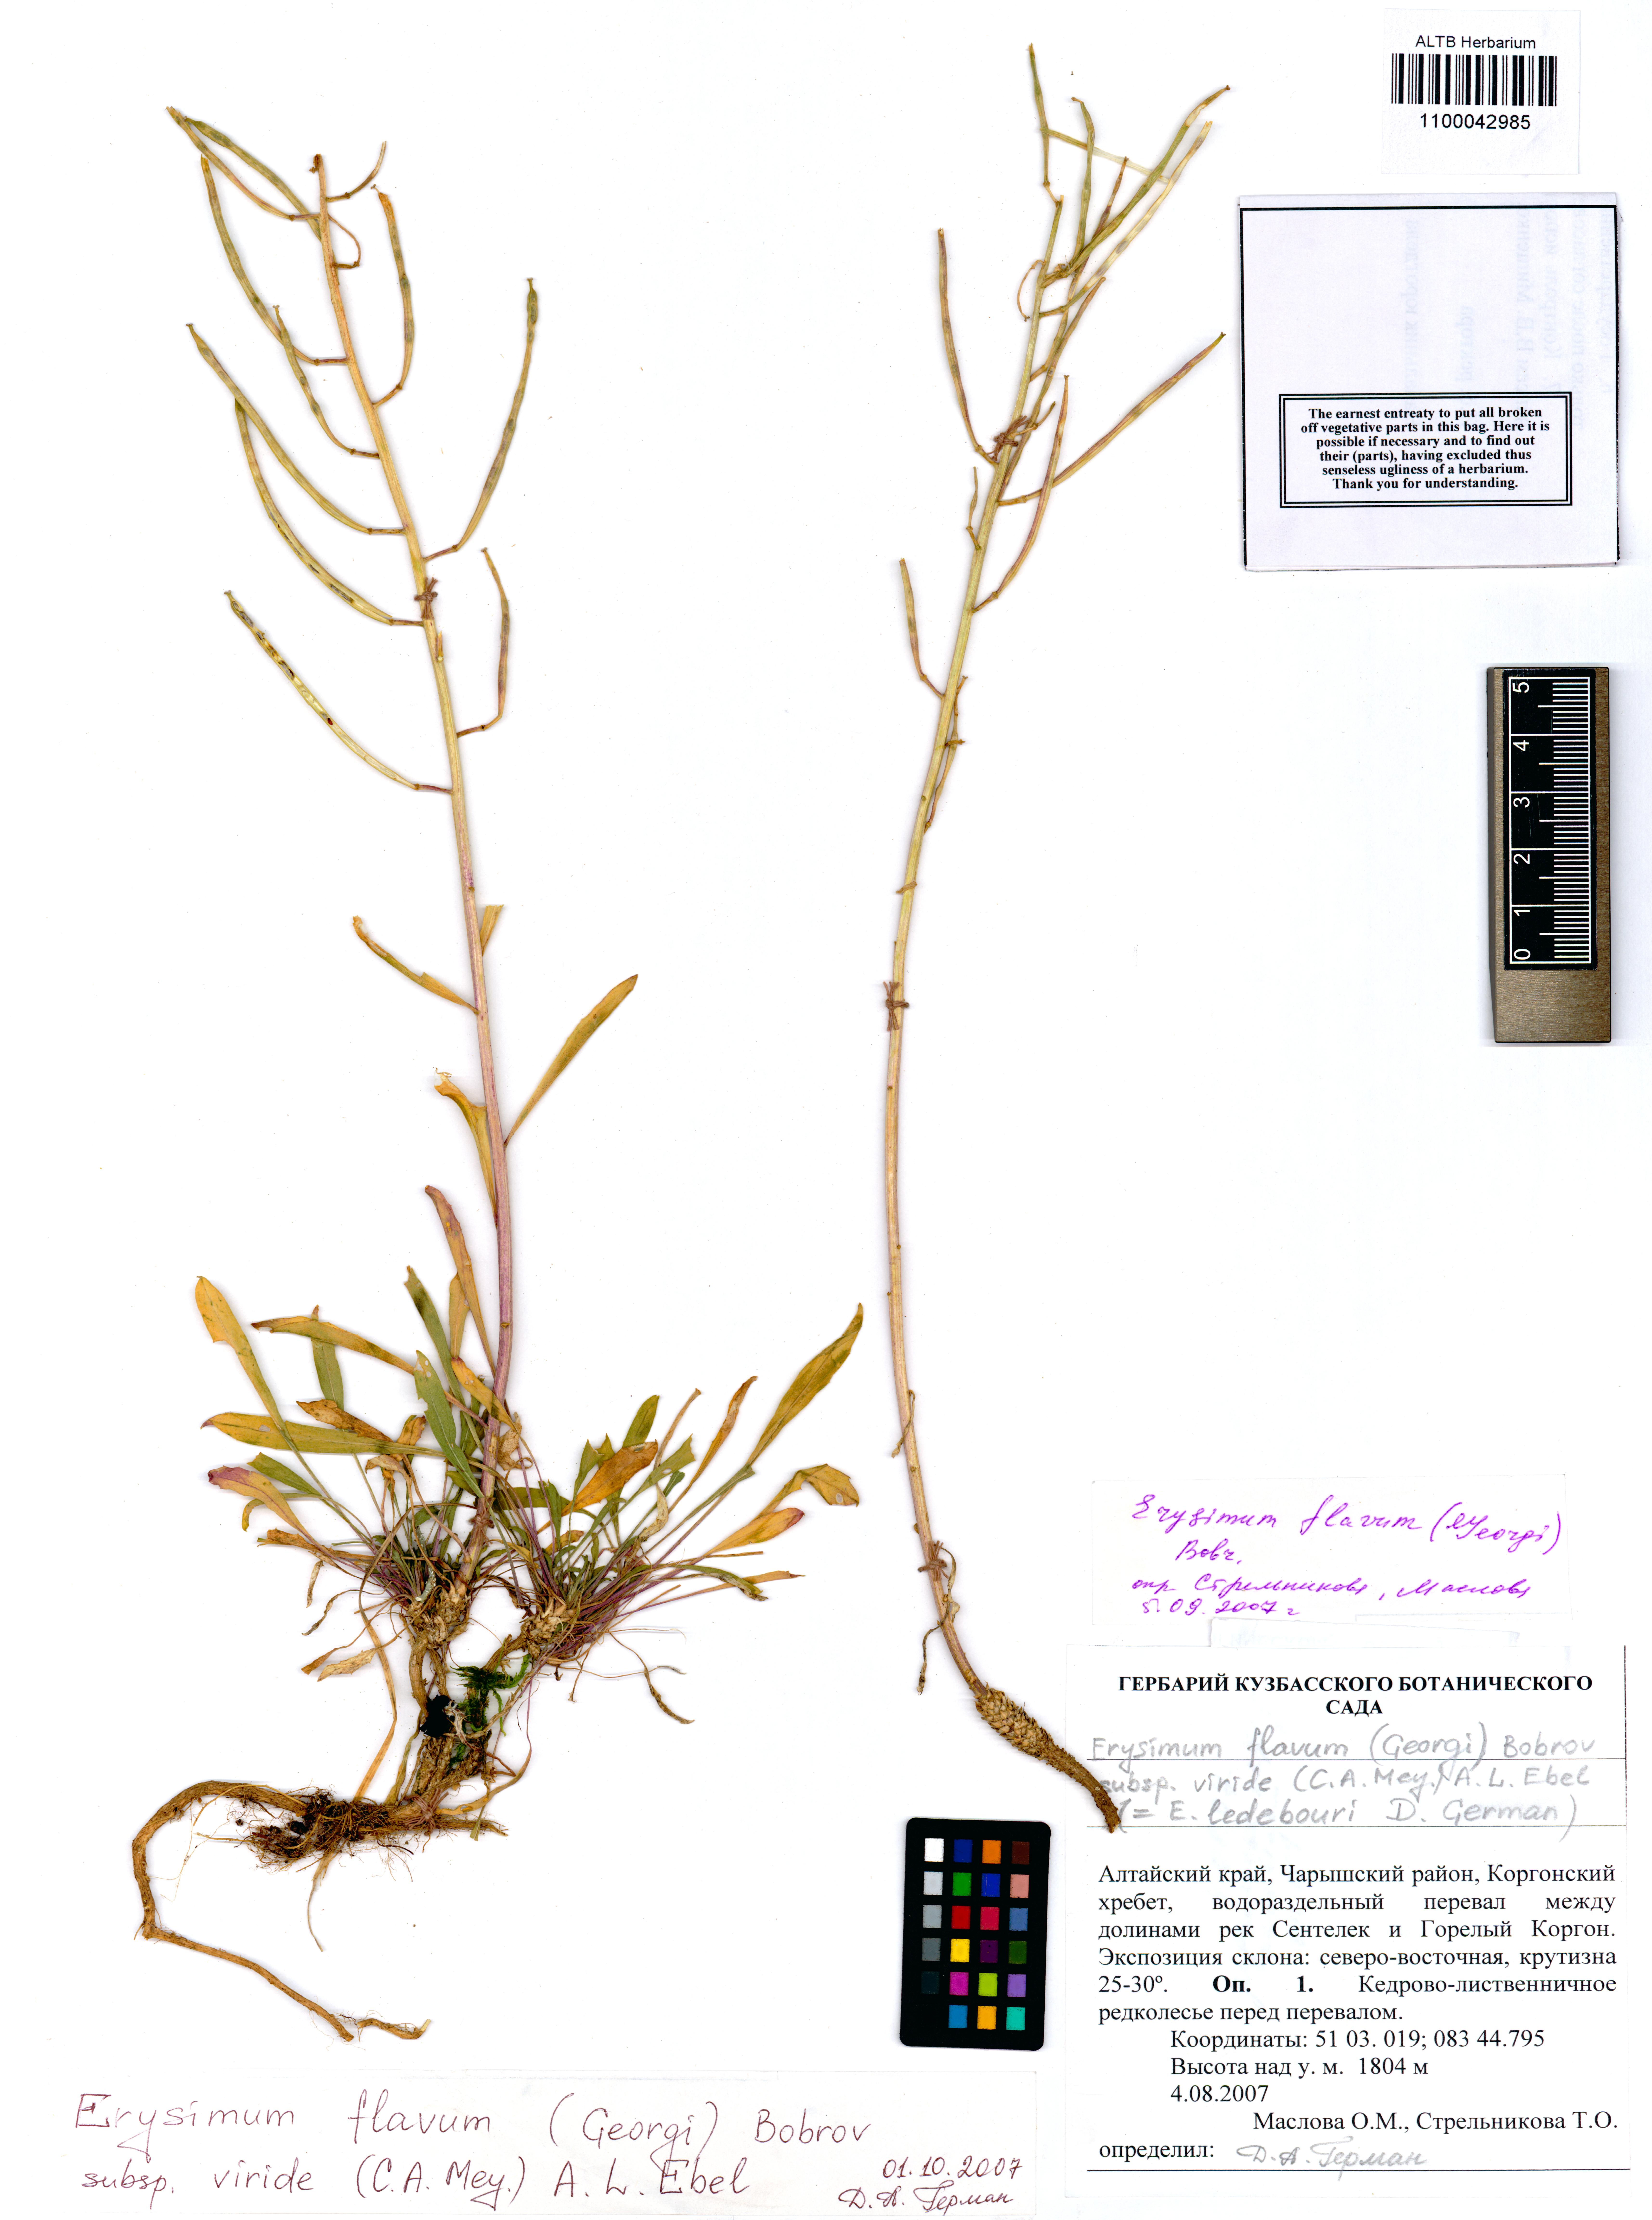 Erysimum flavum subsp. viride (C.A.Mey.) A.L.Ebel